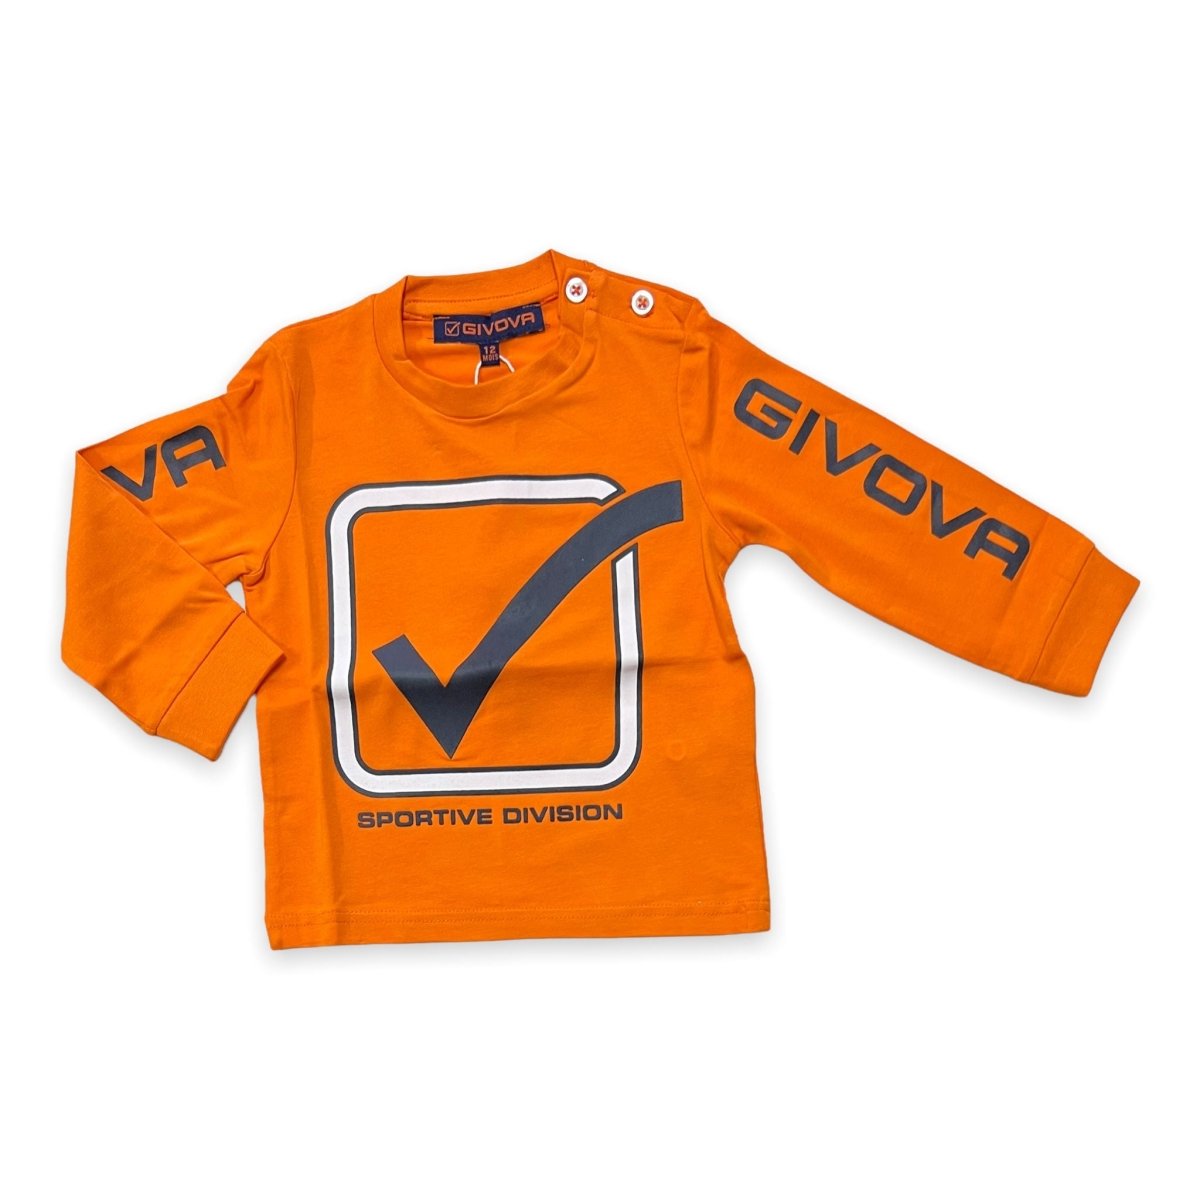 T-Shirt Neonato Givova - Mstore016 - T-shirt Neonato - Givova